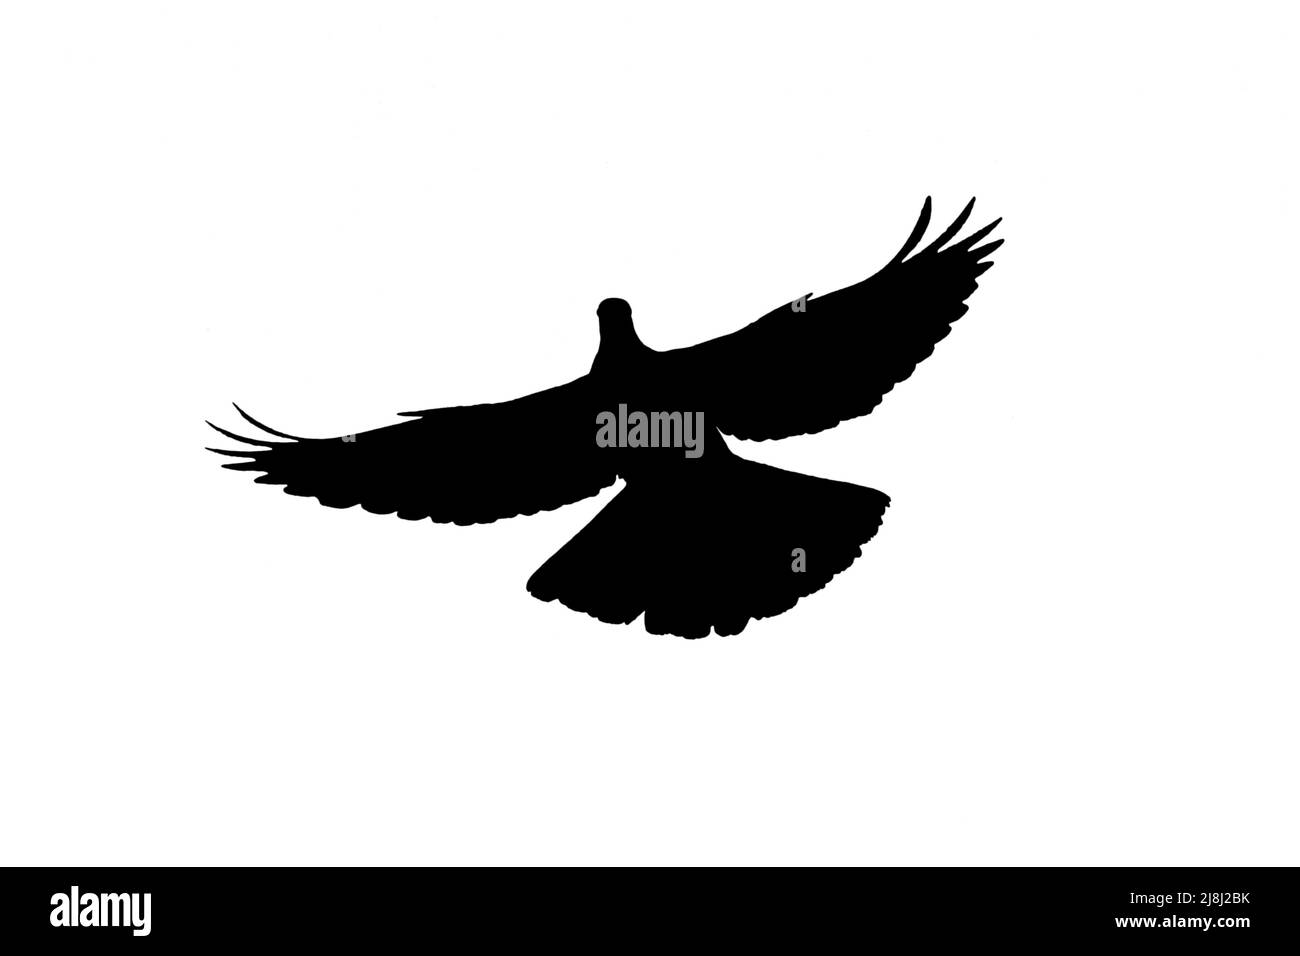 Silhouette de pigeon en bois commun (Columba palumbus) en vol entourée d'un fond blanc pour montrer les formes d'ailes, de tête et de queue Banque D'Images